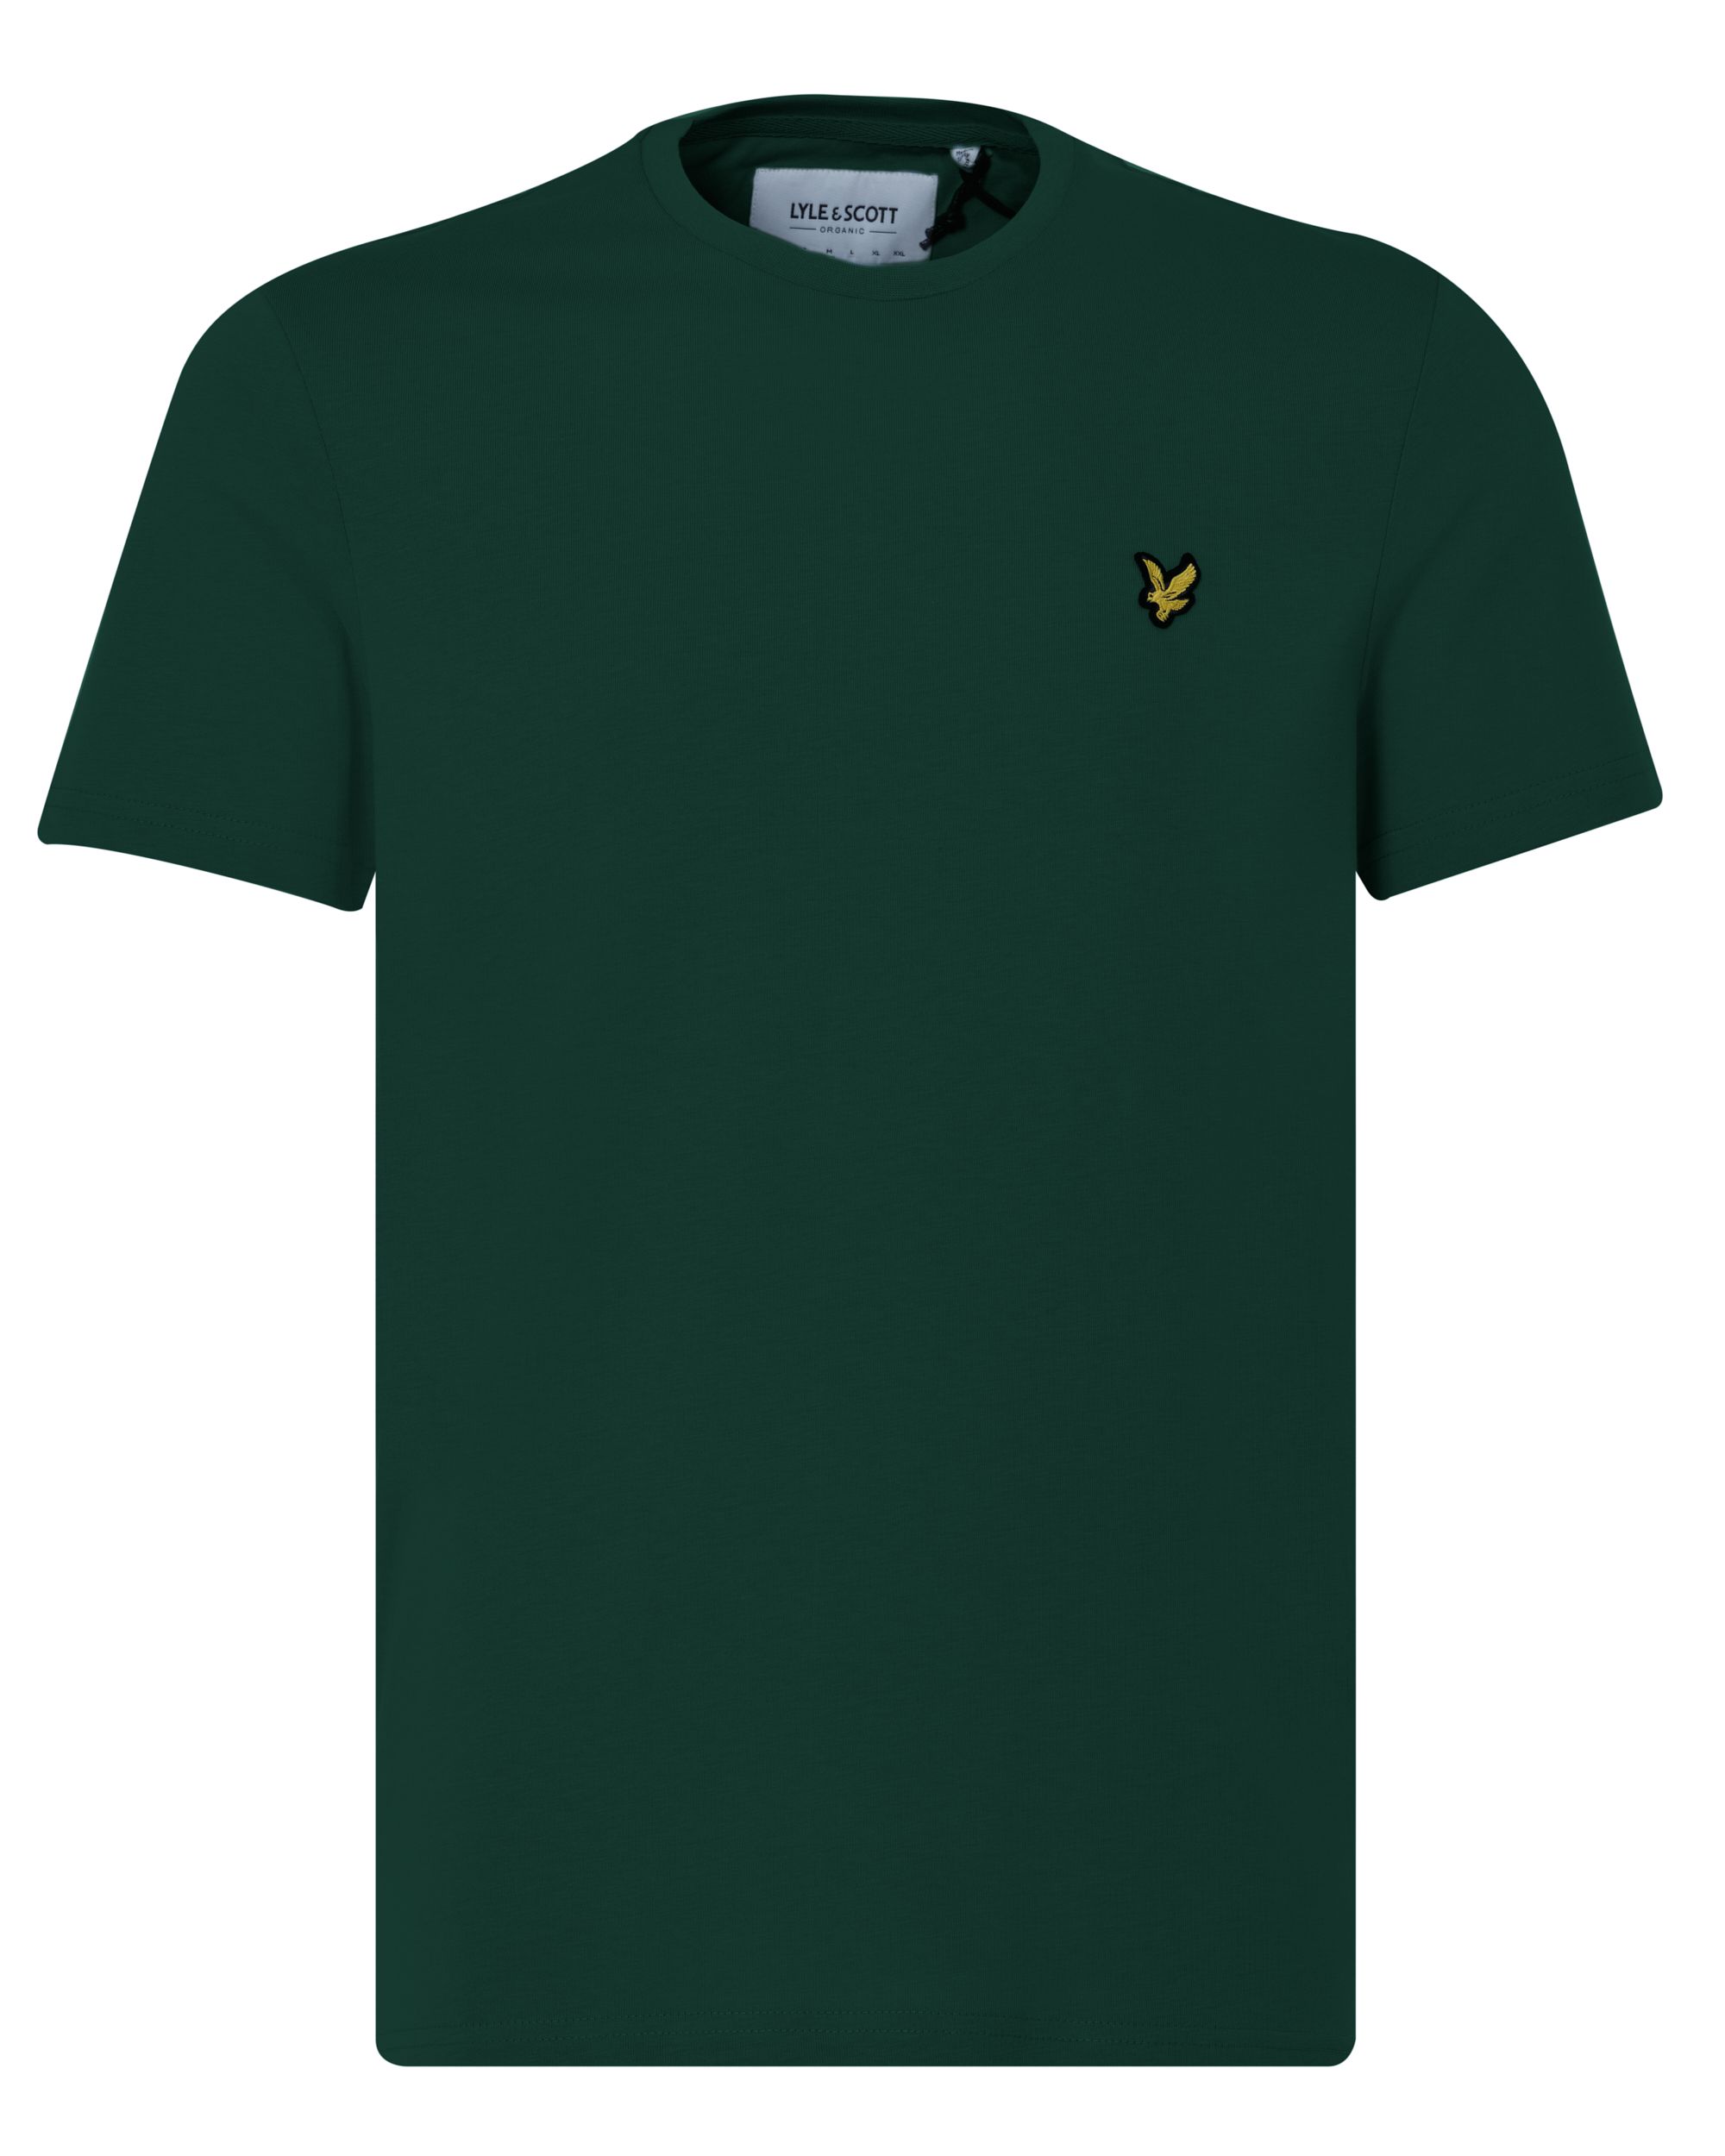 Lyle & Scott T-shirt KM Donker groen 080539-001-L